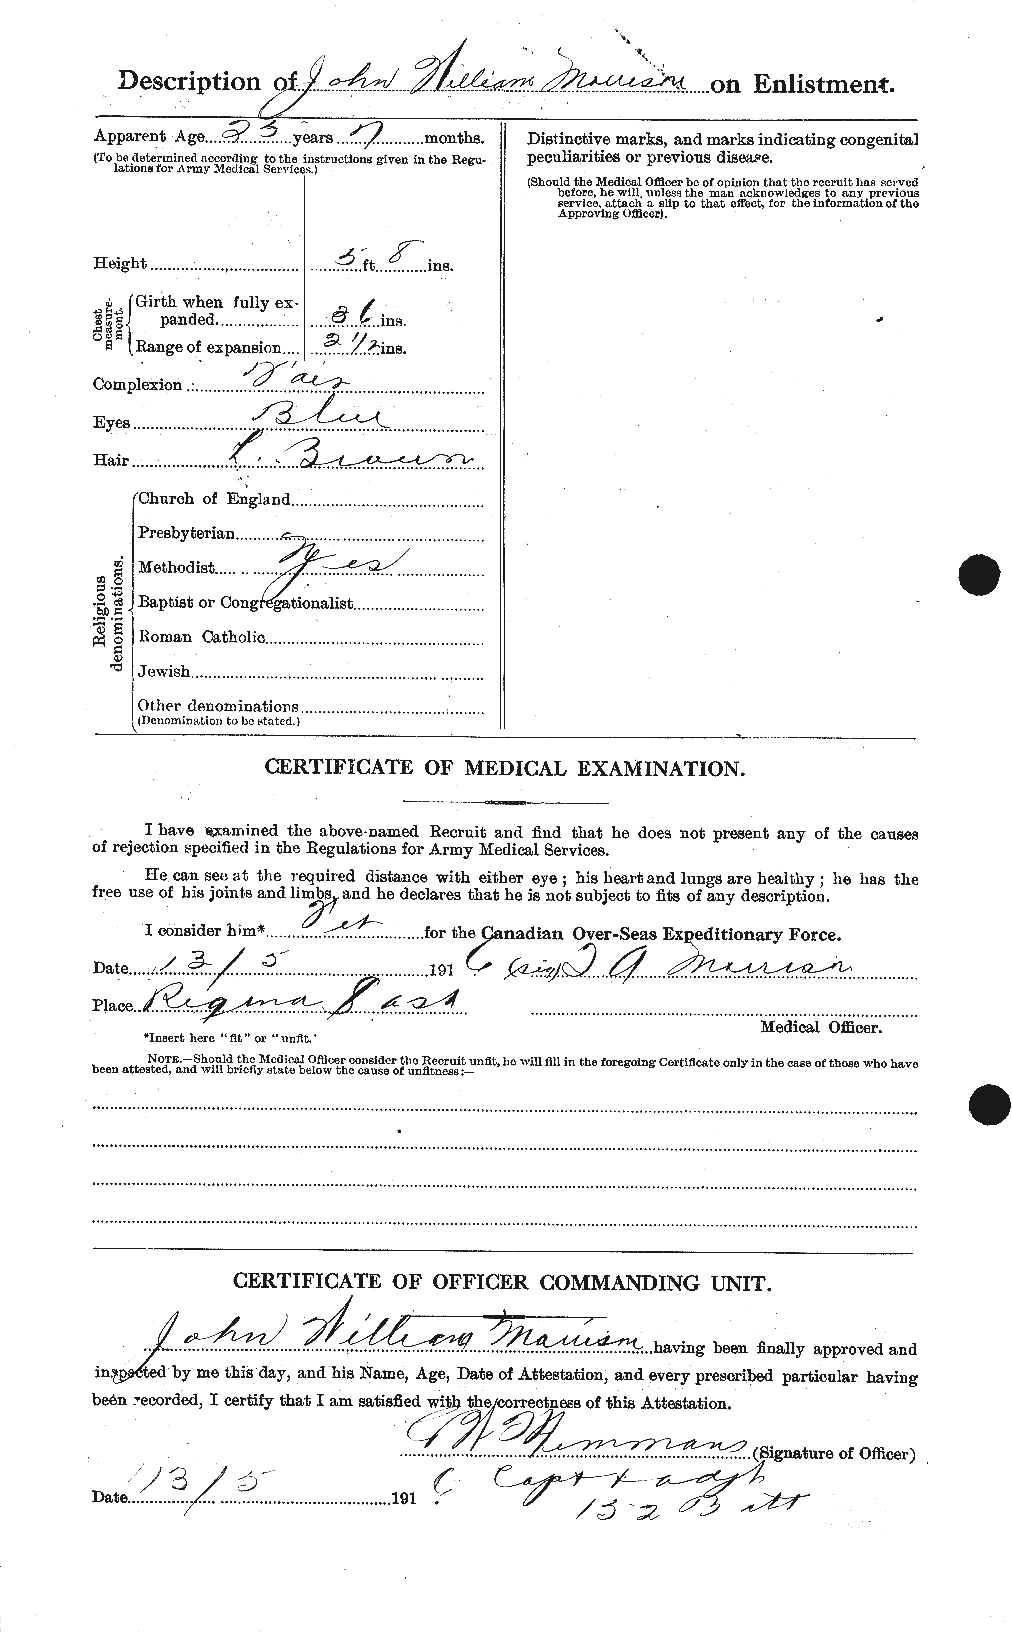 Dossiers du Personnel de la Première Guerre mondiale - CEC 507080b